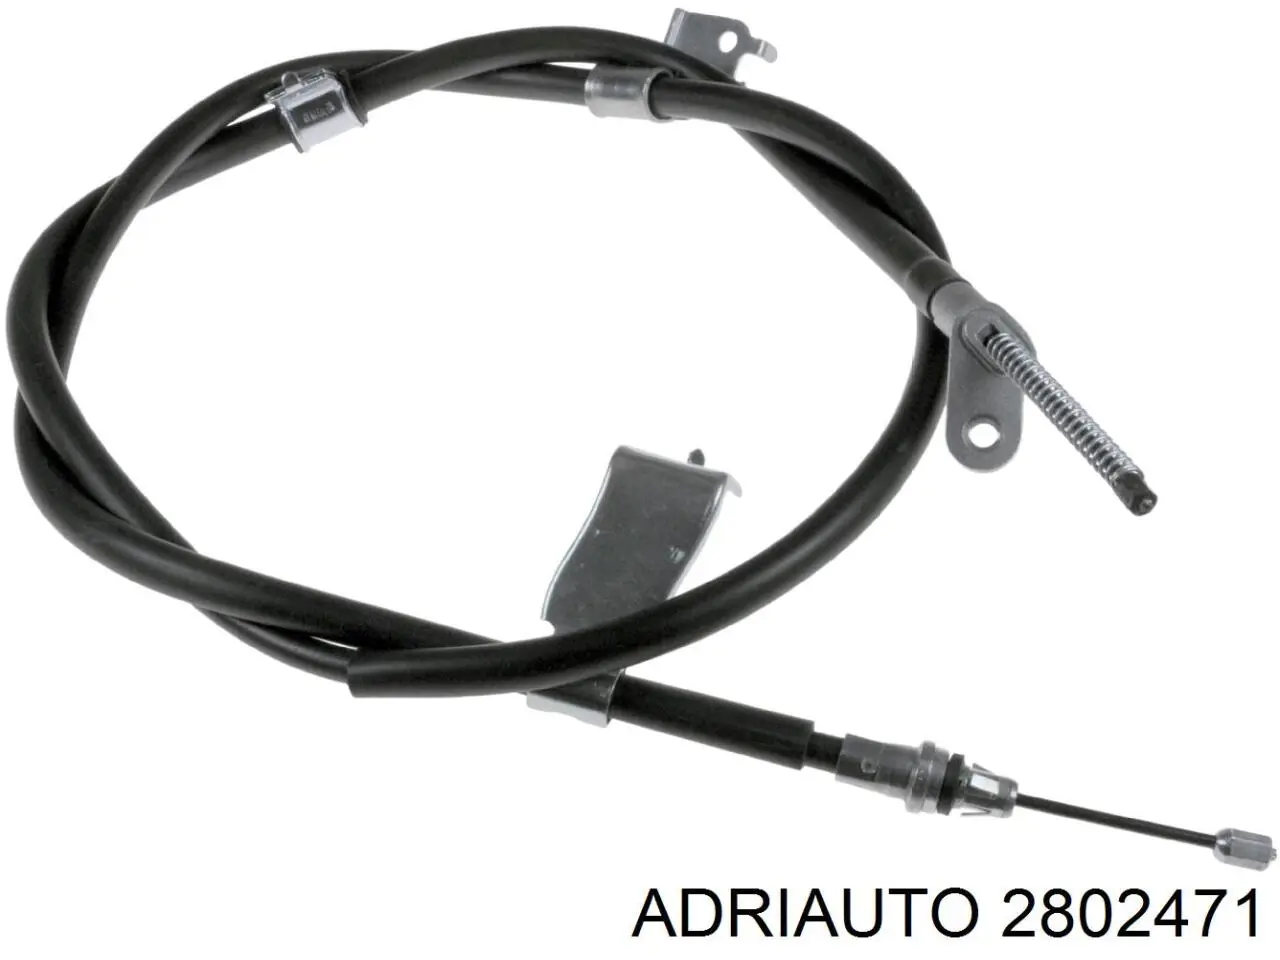 2802471 Adriauto cable de freno de mano trasero izquierdo